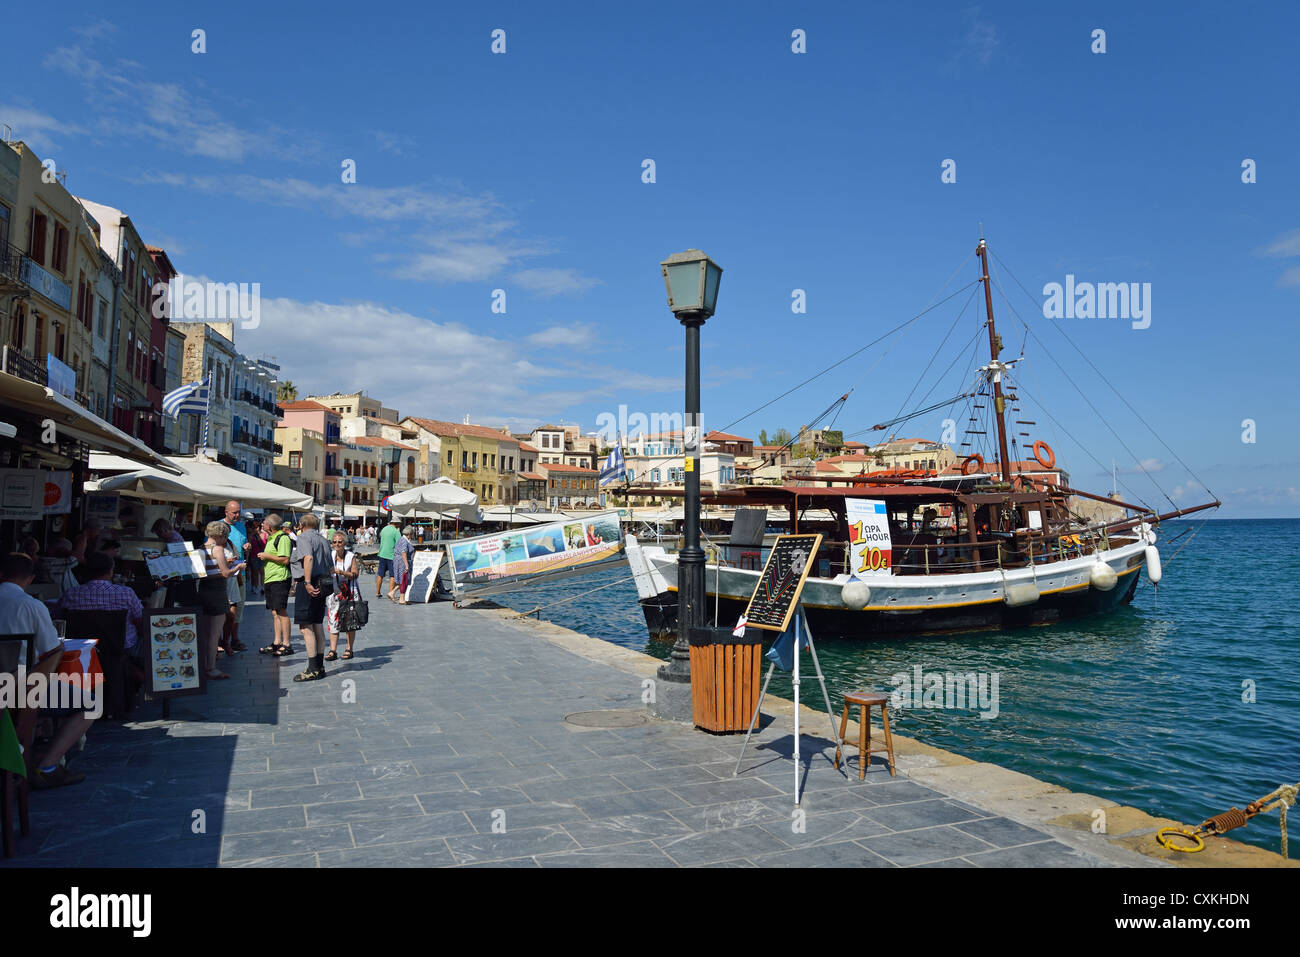 Restaurants on seafront promenade, Chania, Chania Prefecture, Crete, Greece Stock Photo